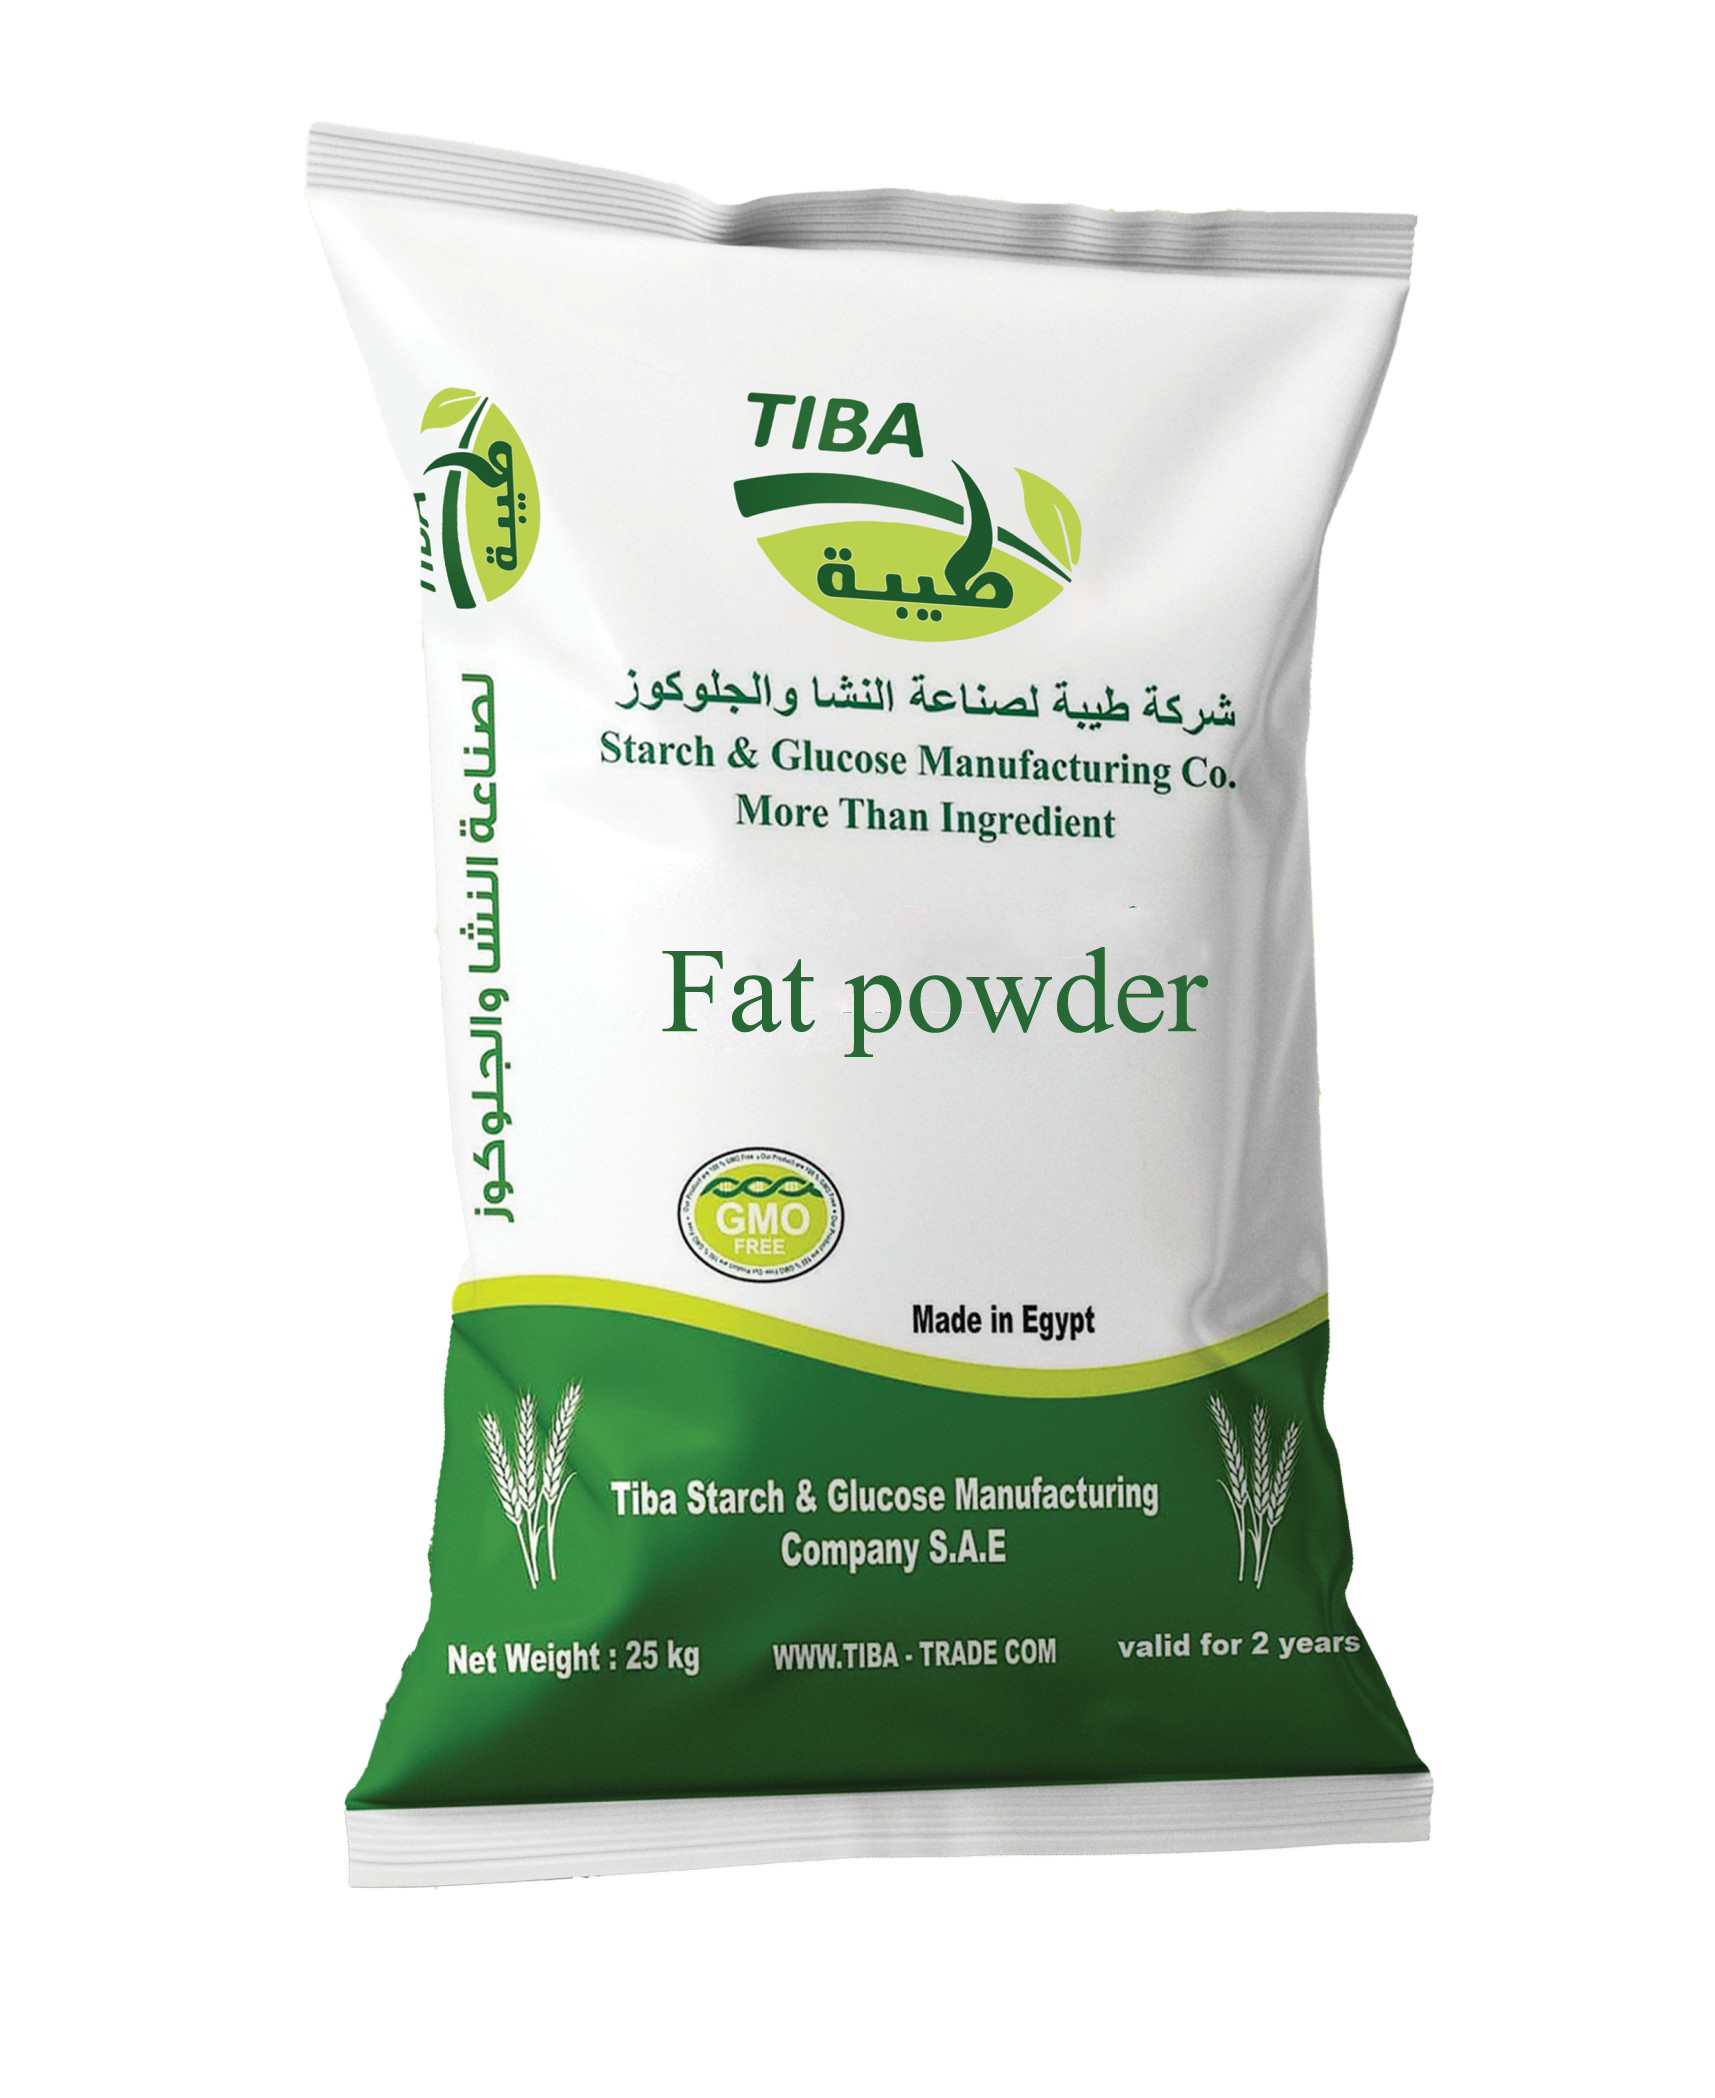 Fat powder